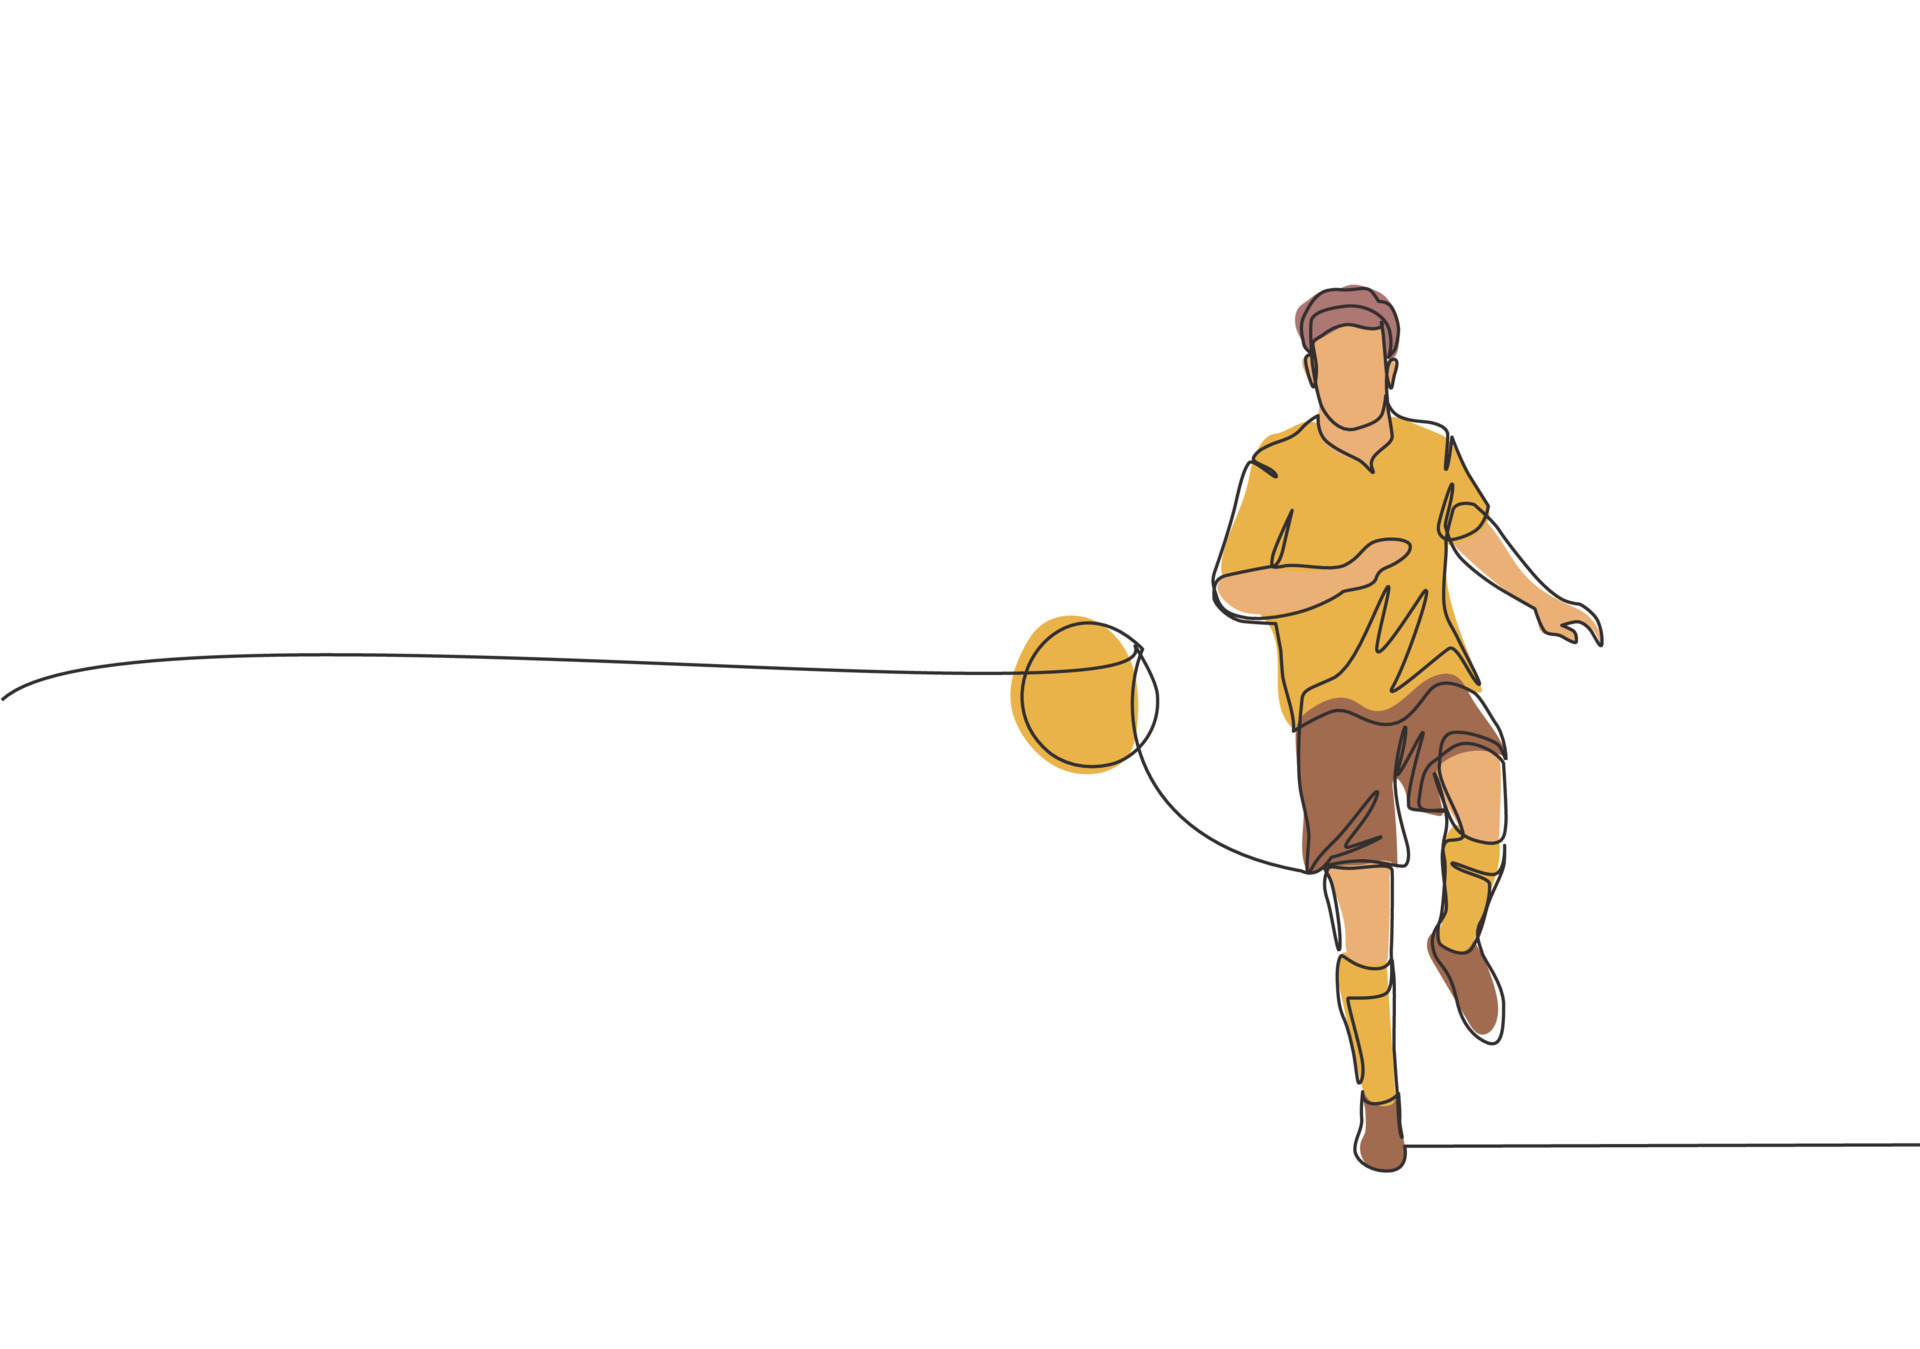 solteiro 1 linha desenhando futebol jogador chutes futebol bola